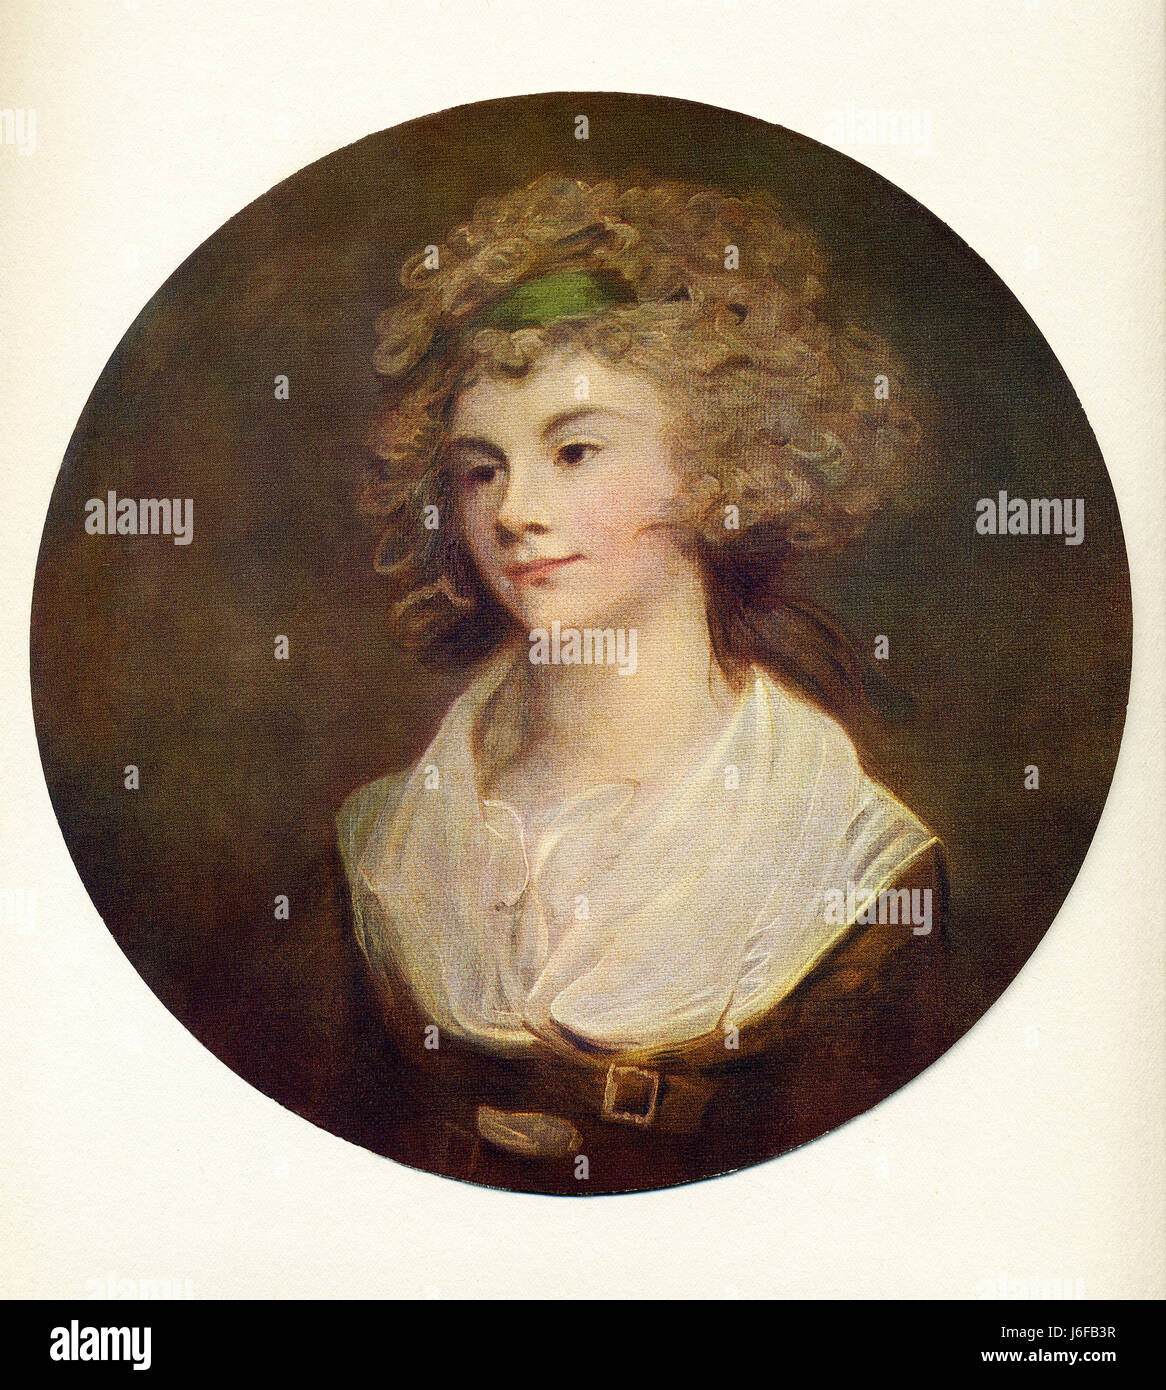 Ce tableau, intitulé La Parson's Daughter, a été fait par le peintre anglais George Romney (1734-1802). Romney doit sa renommée à son chef de portraits de femmes, en particulier les nombreuses peintures de la fascinante Lady Hamilton. Banque D'Images